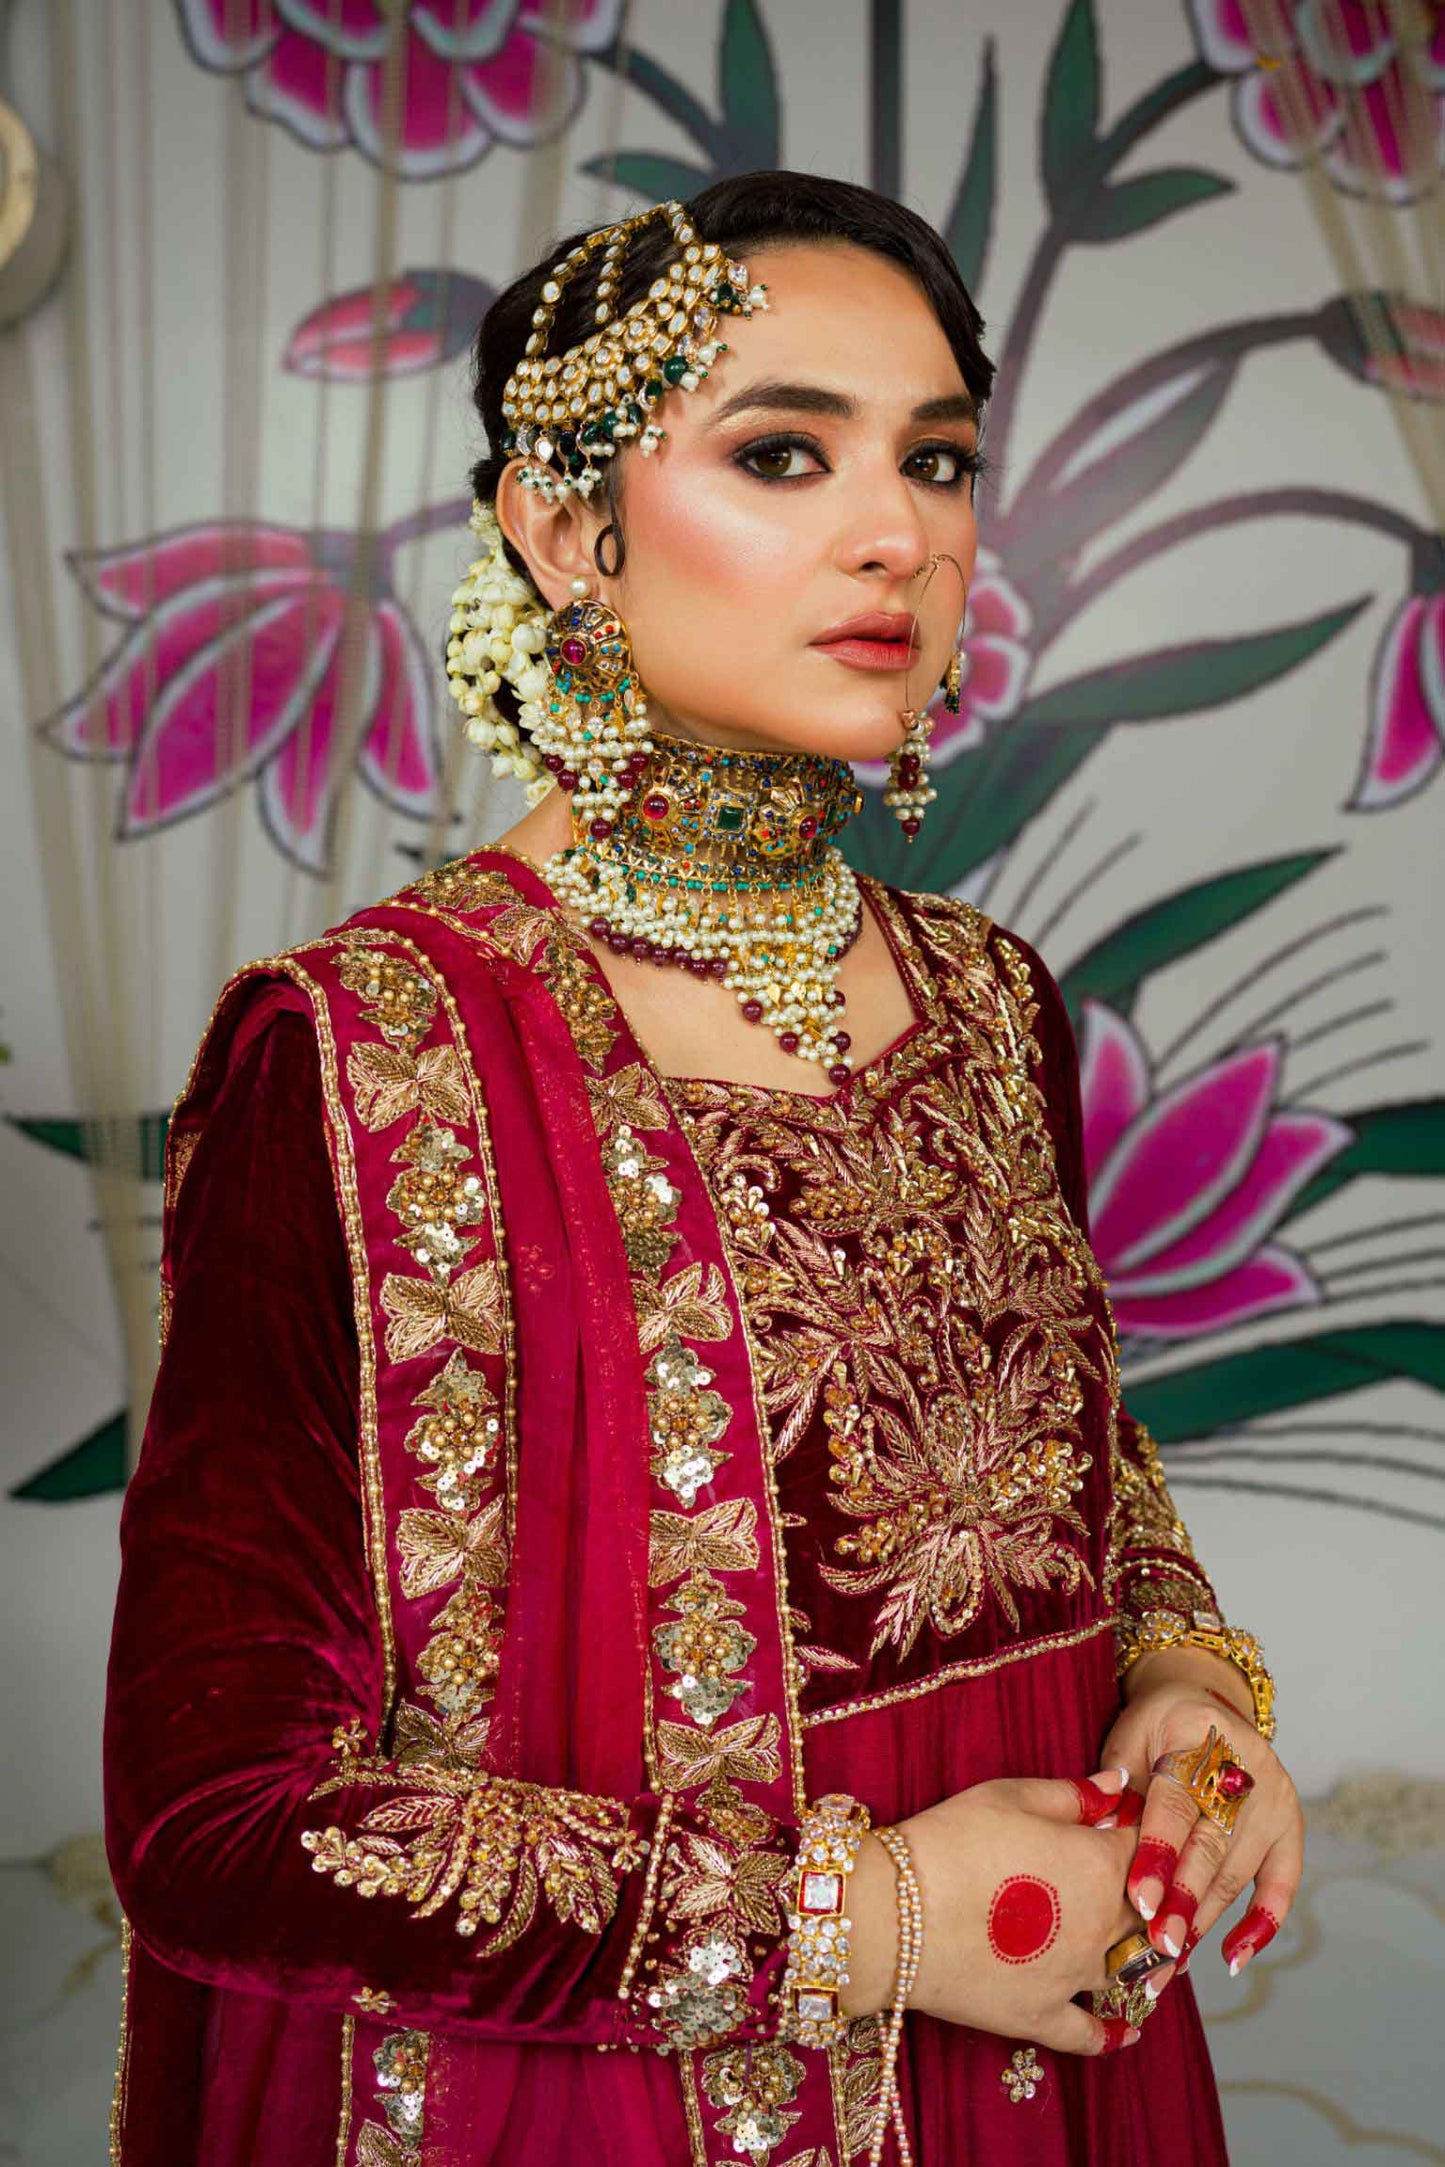 Aafreen | Bridal Dress | Pakistani Wedding Dress | RJ's Pret